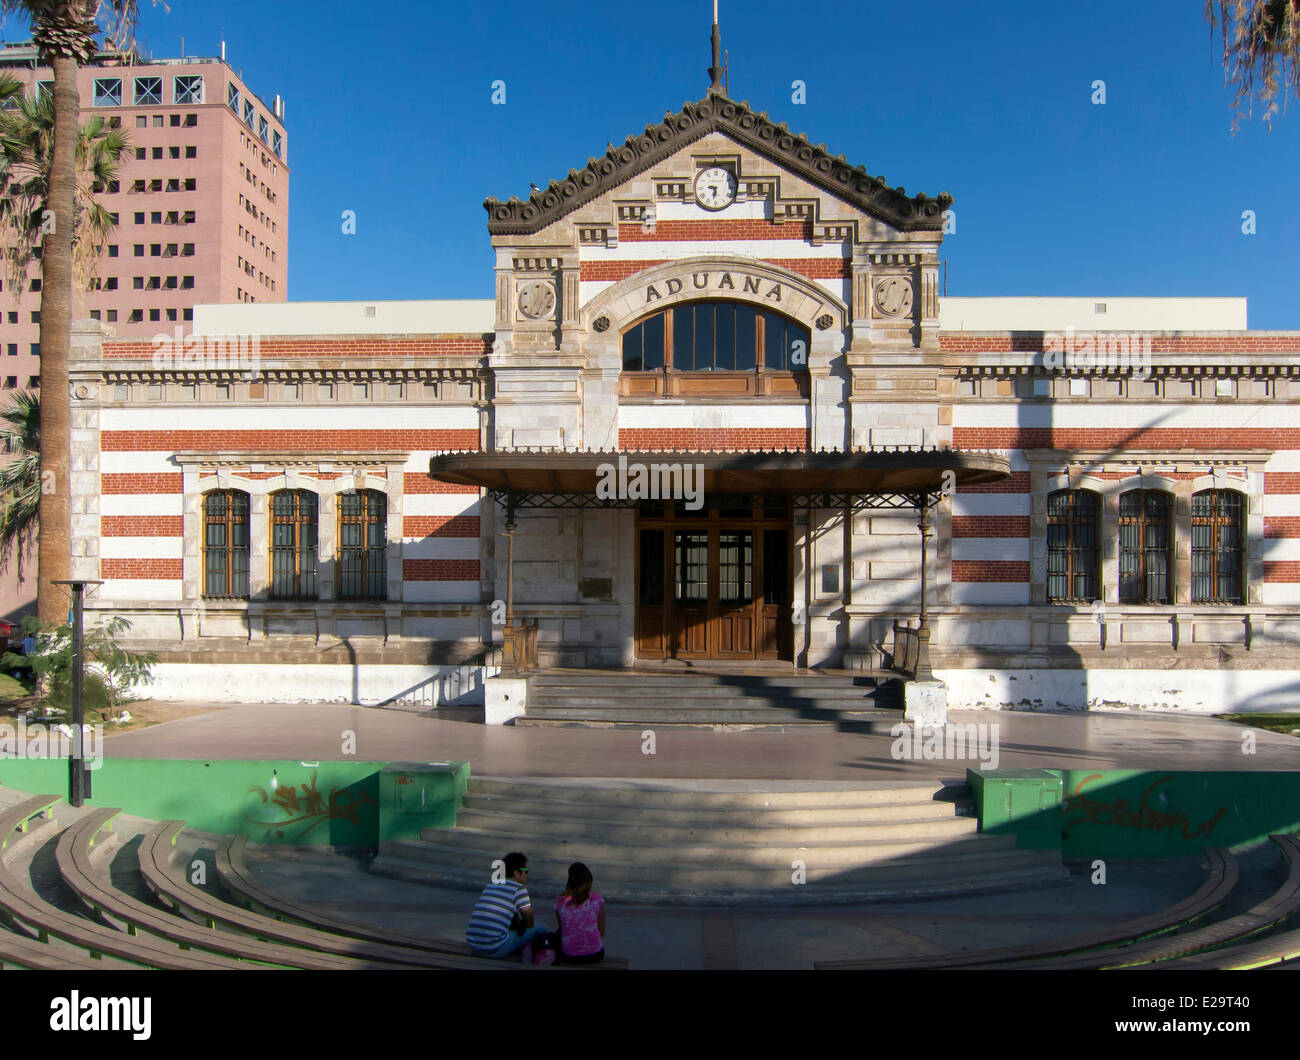 Chile, Arica und Parinacota Region, Arica, Ex Aduana, einem ehemaligen Zollgebäude 1874 errichtet in den Werkstätten von Gustave Stockfoto